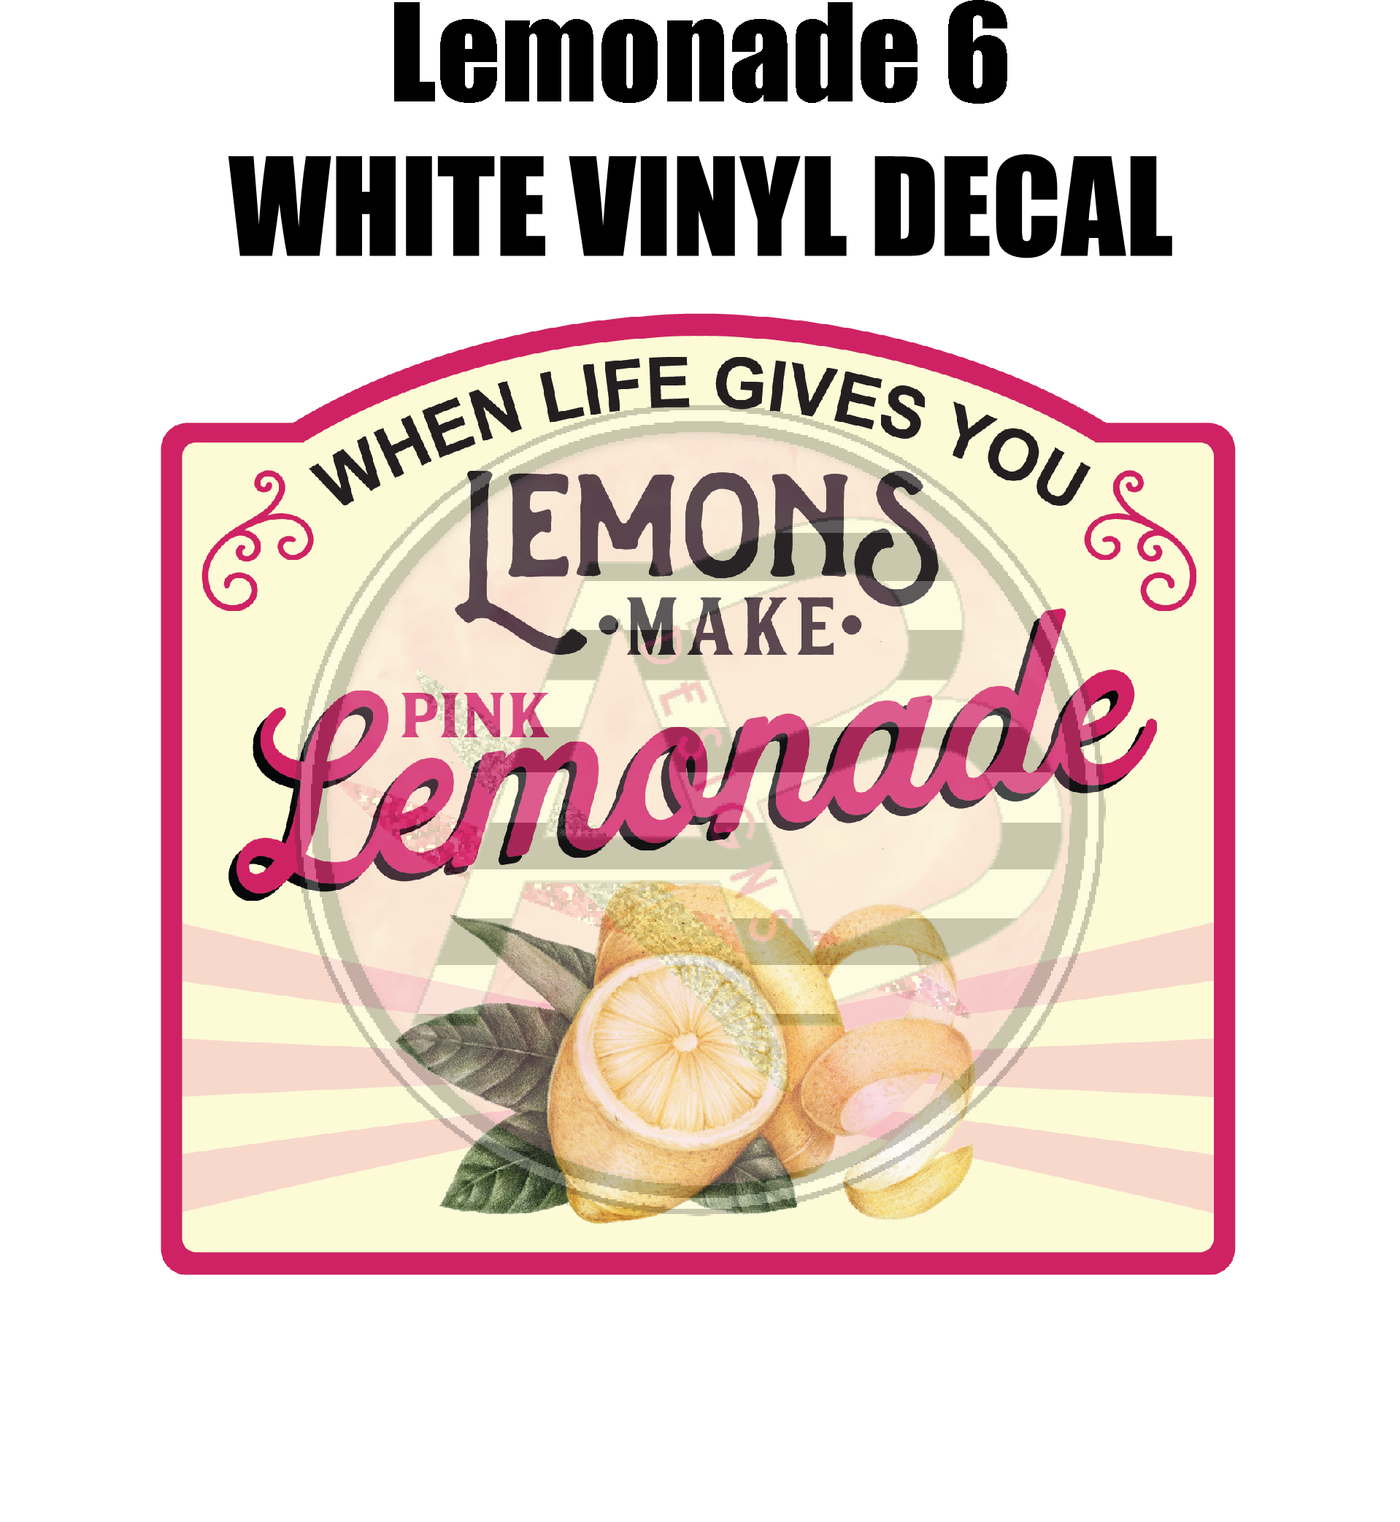 Lemonade 6 - White Vinyl Decal